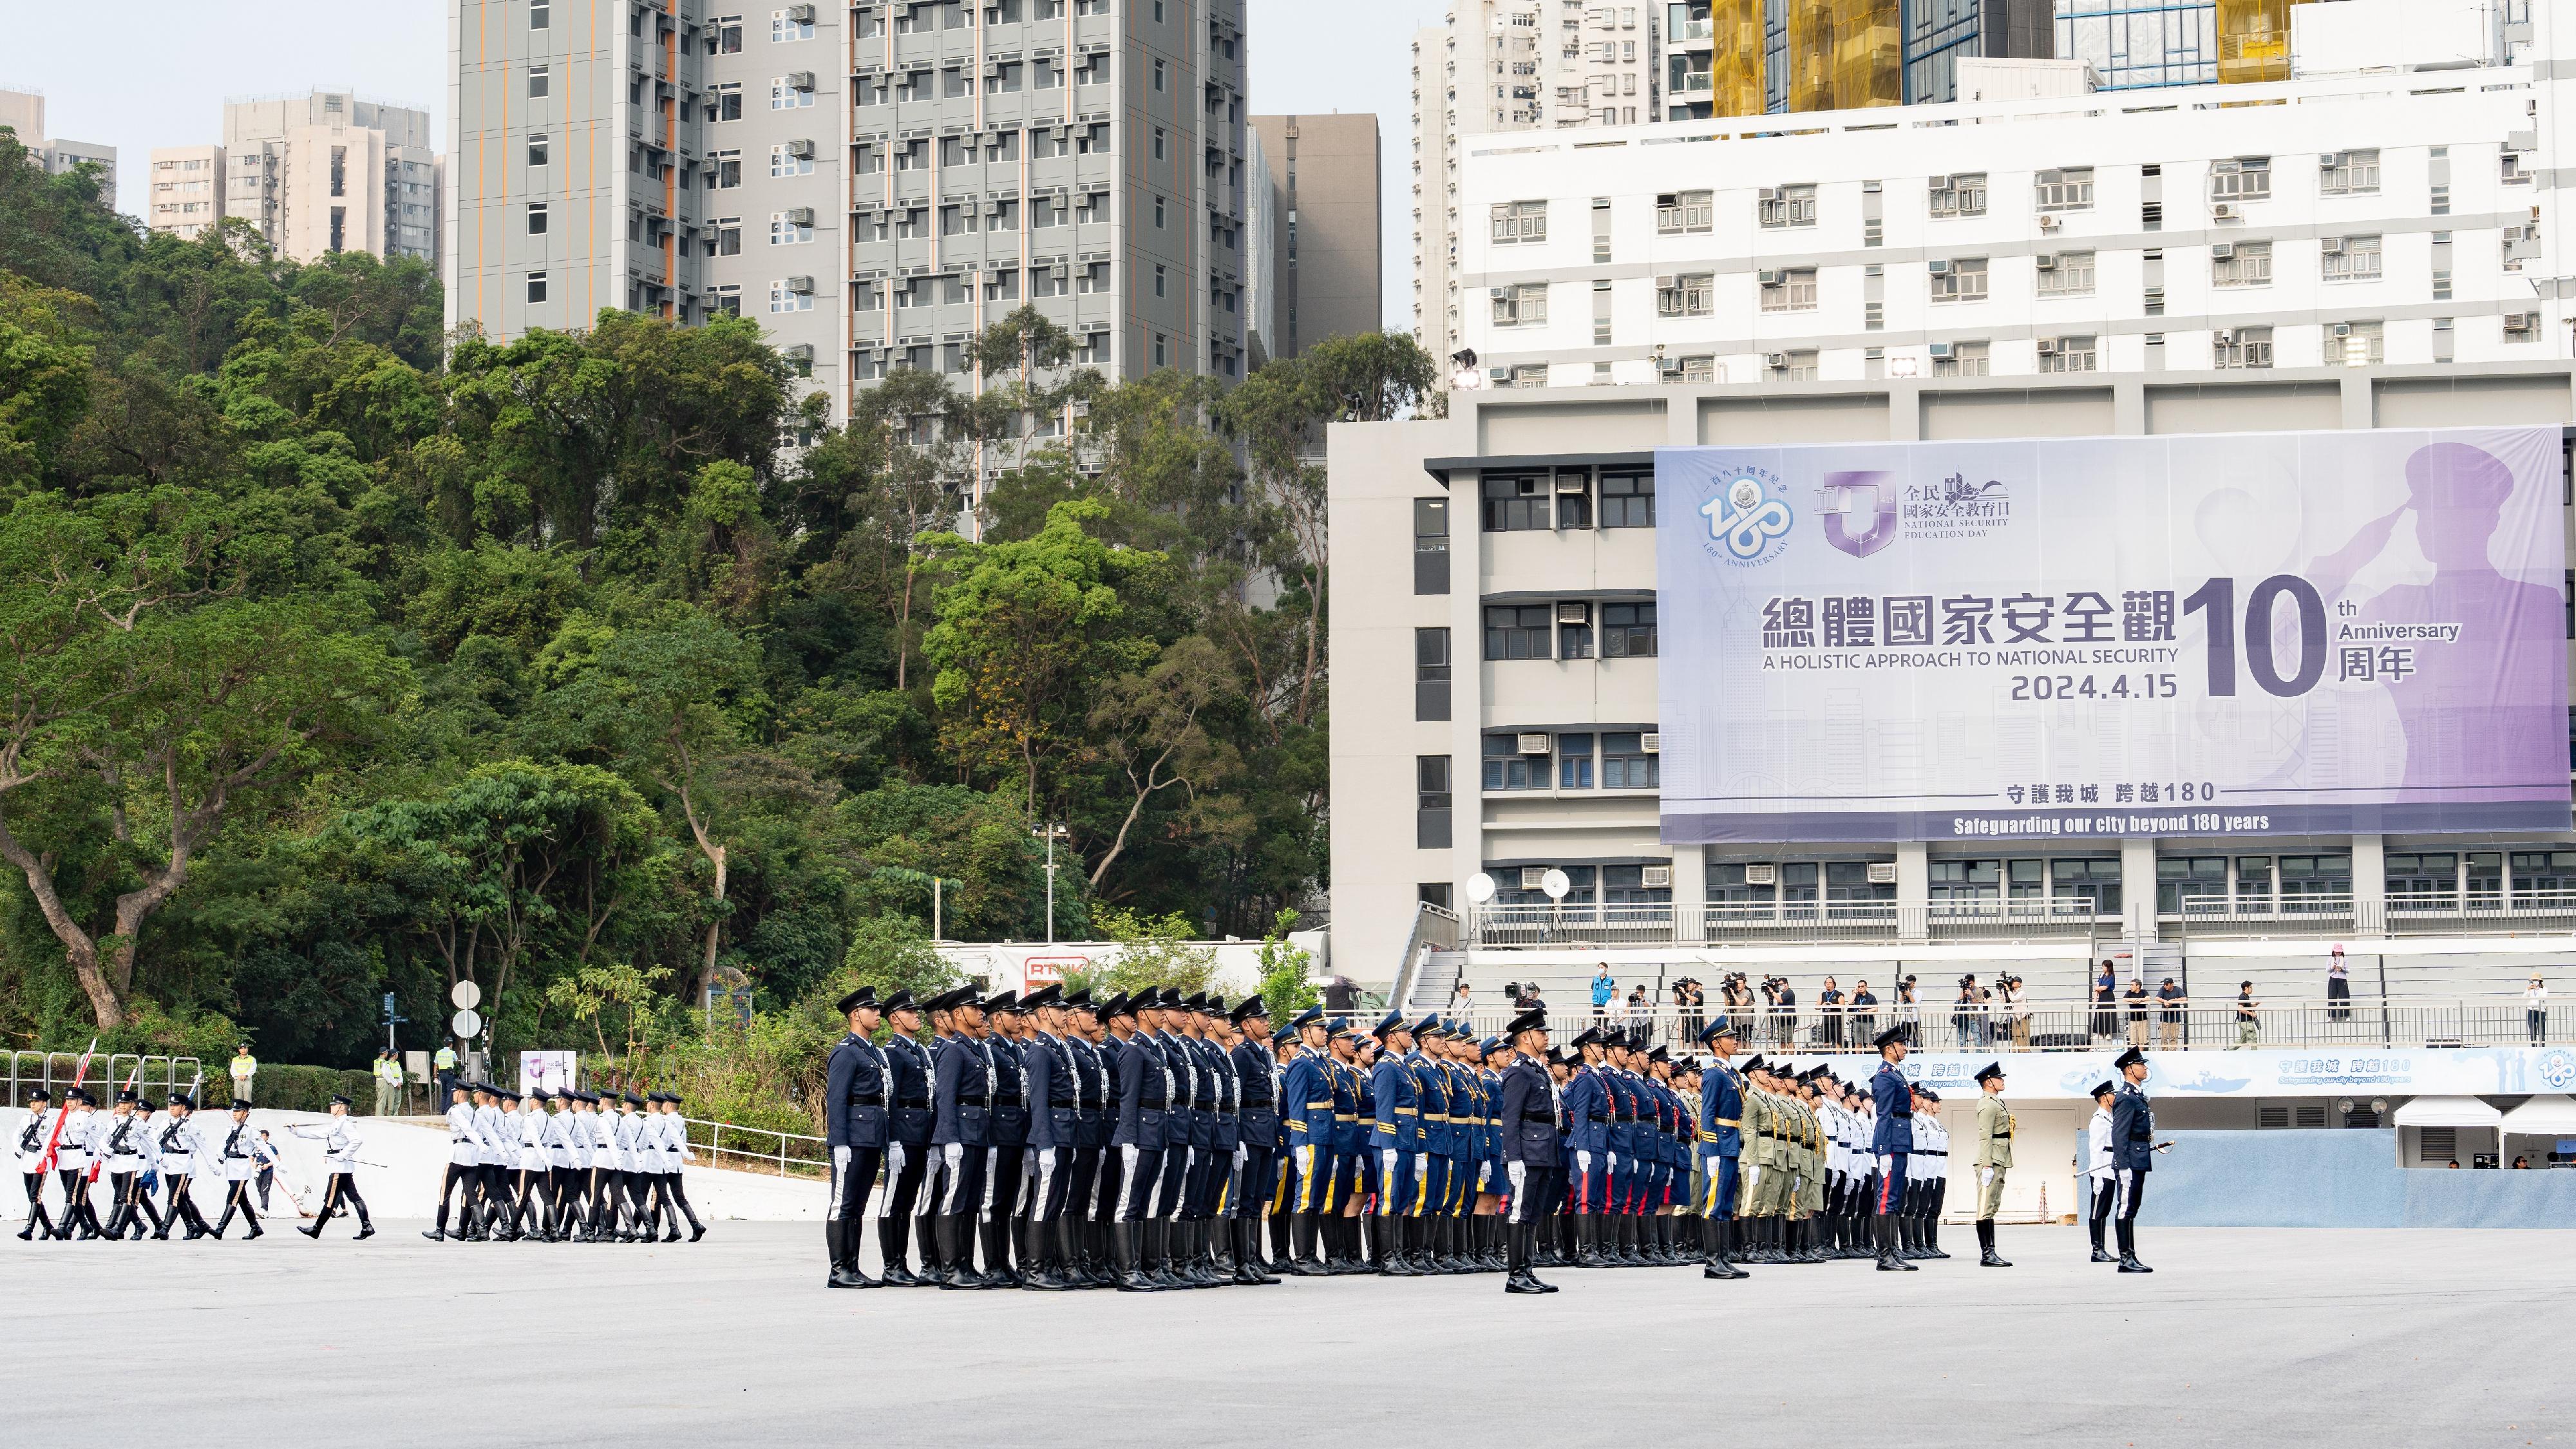 保安局及轄下紀律部隊今日（四月十五日）於香港警察學院聯合舉行「全民國家安全教育日」升旗儀式。圖示紀律部隊儀仗隊在升旗儀式中列隊。